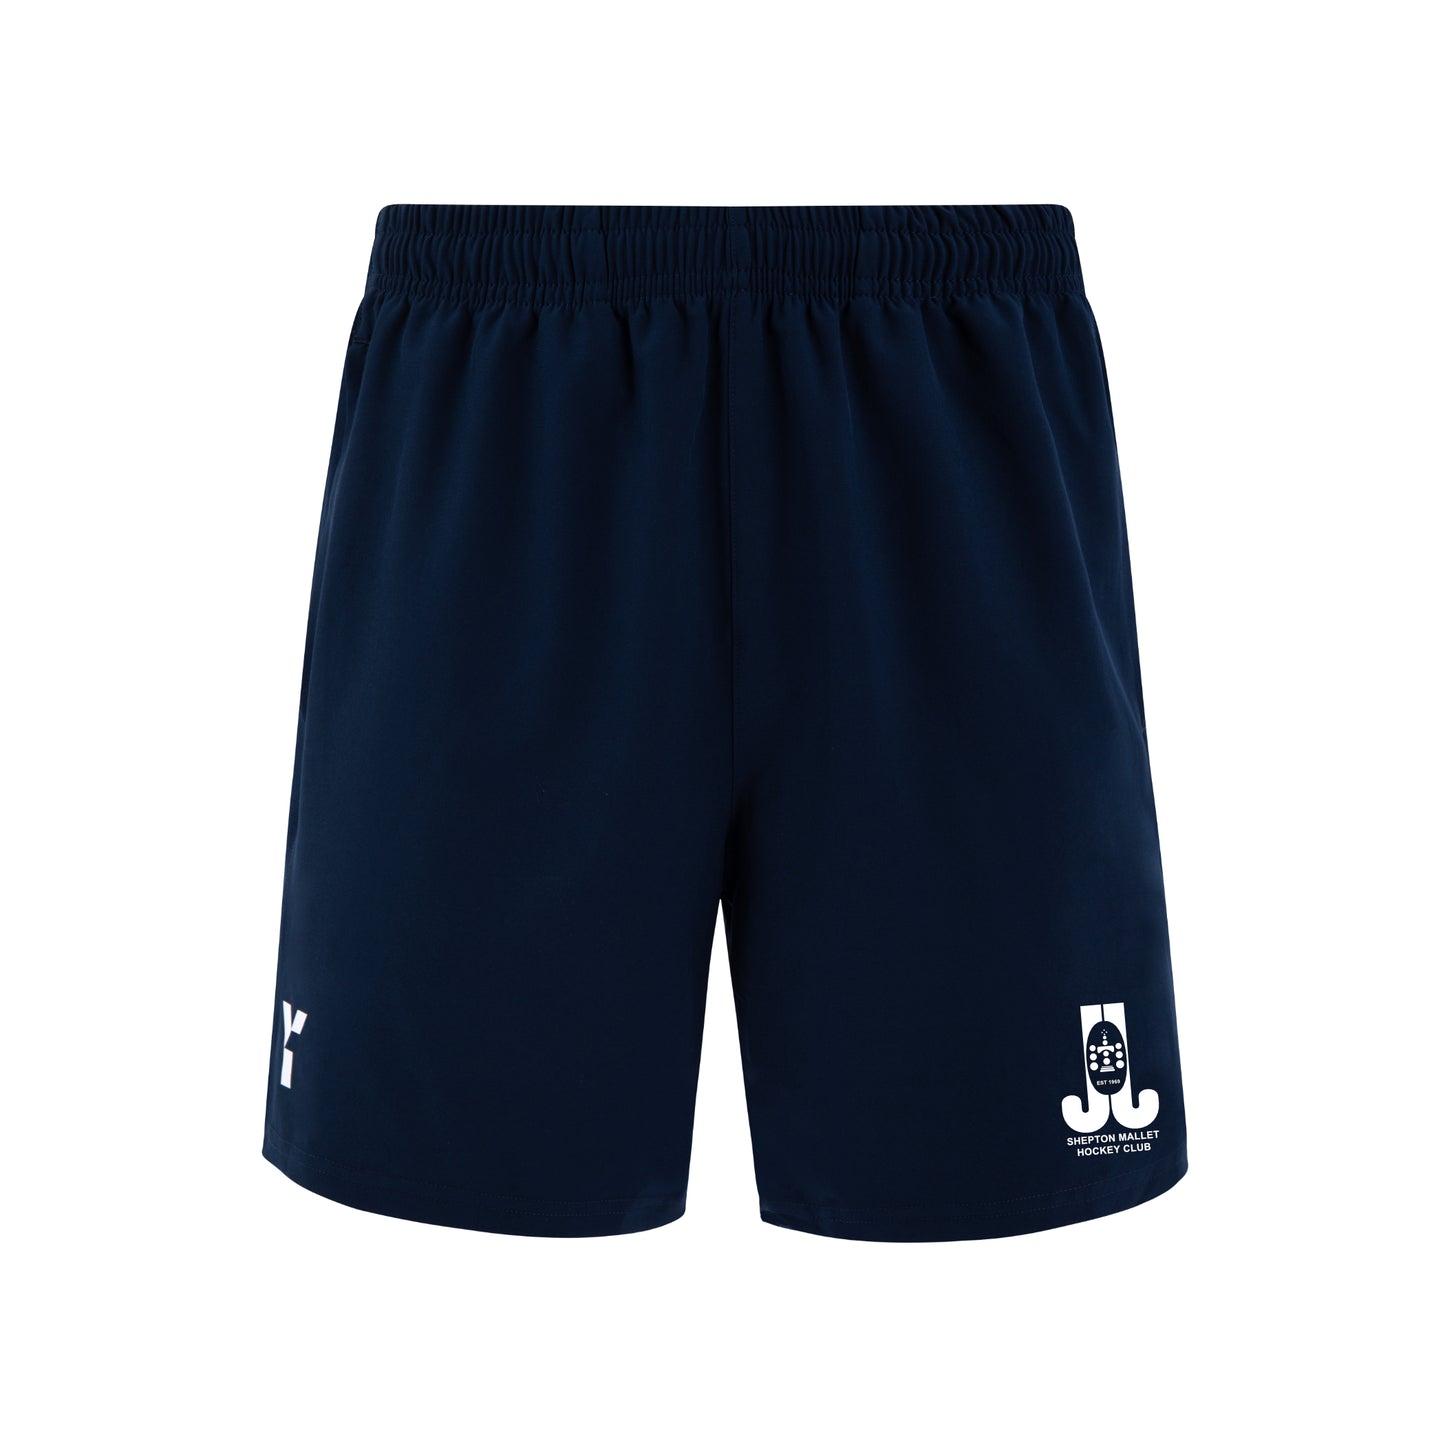 Shepton Mallet HC - Shorts Mens Navy